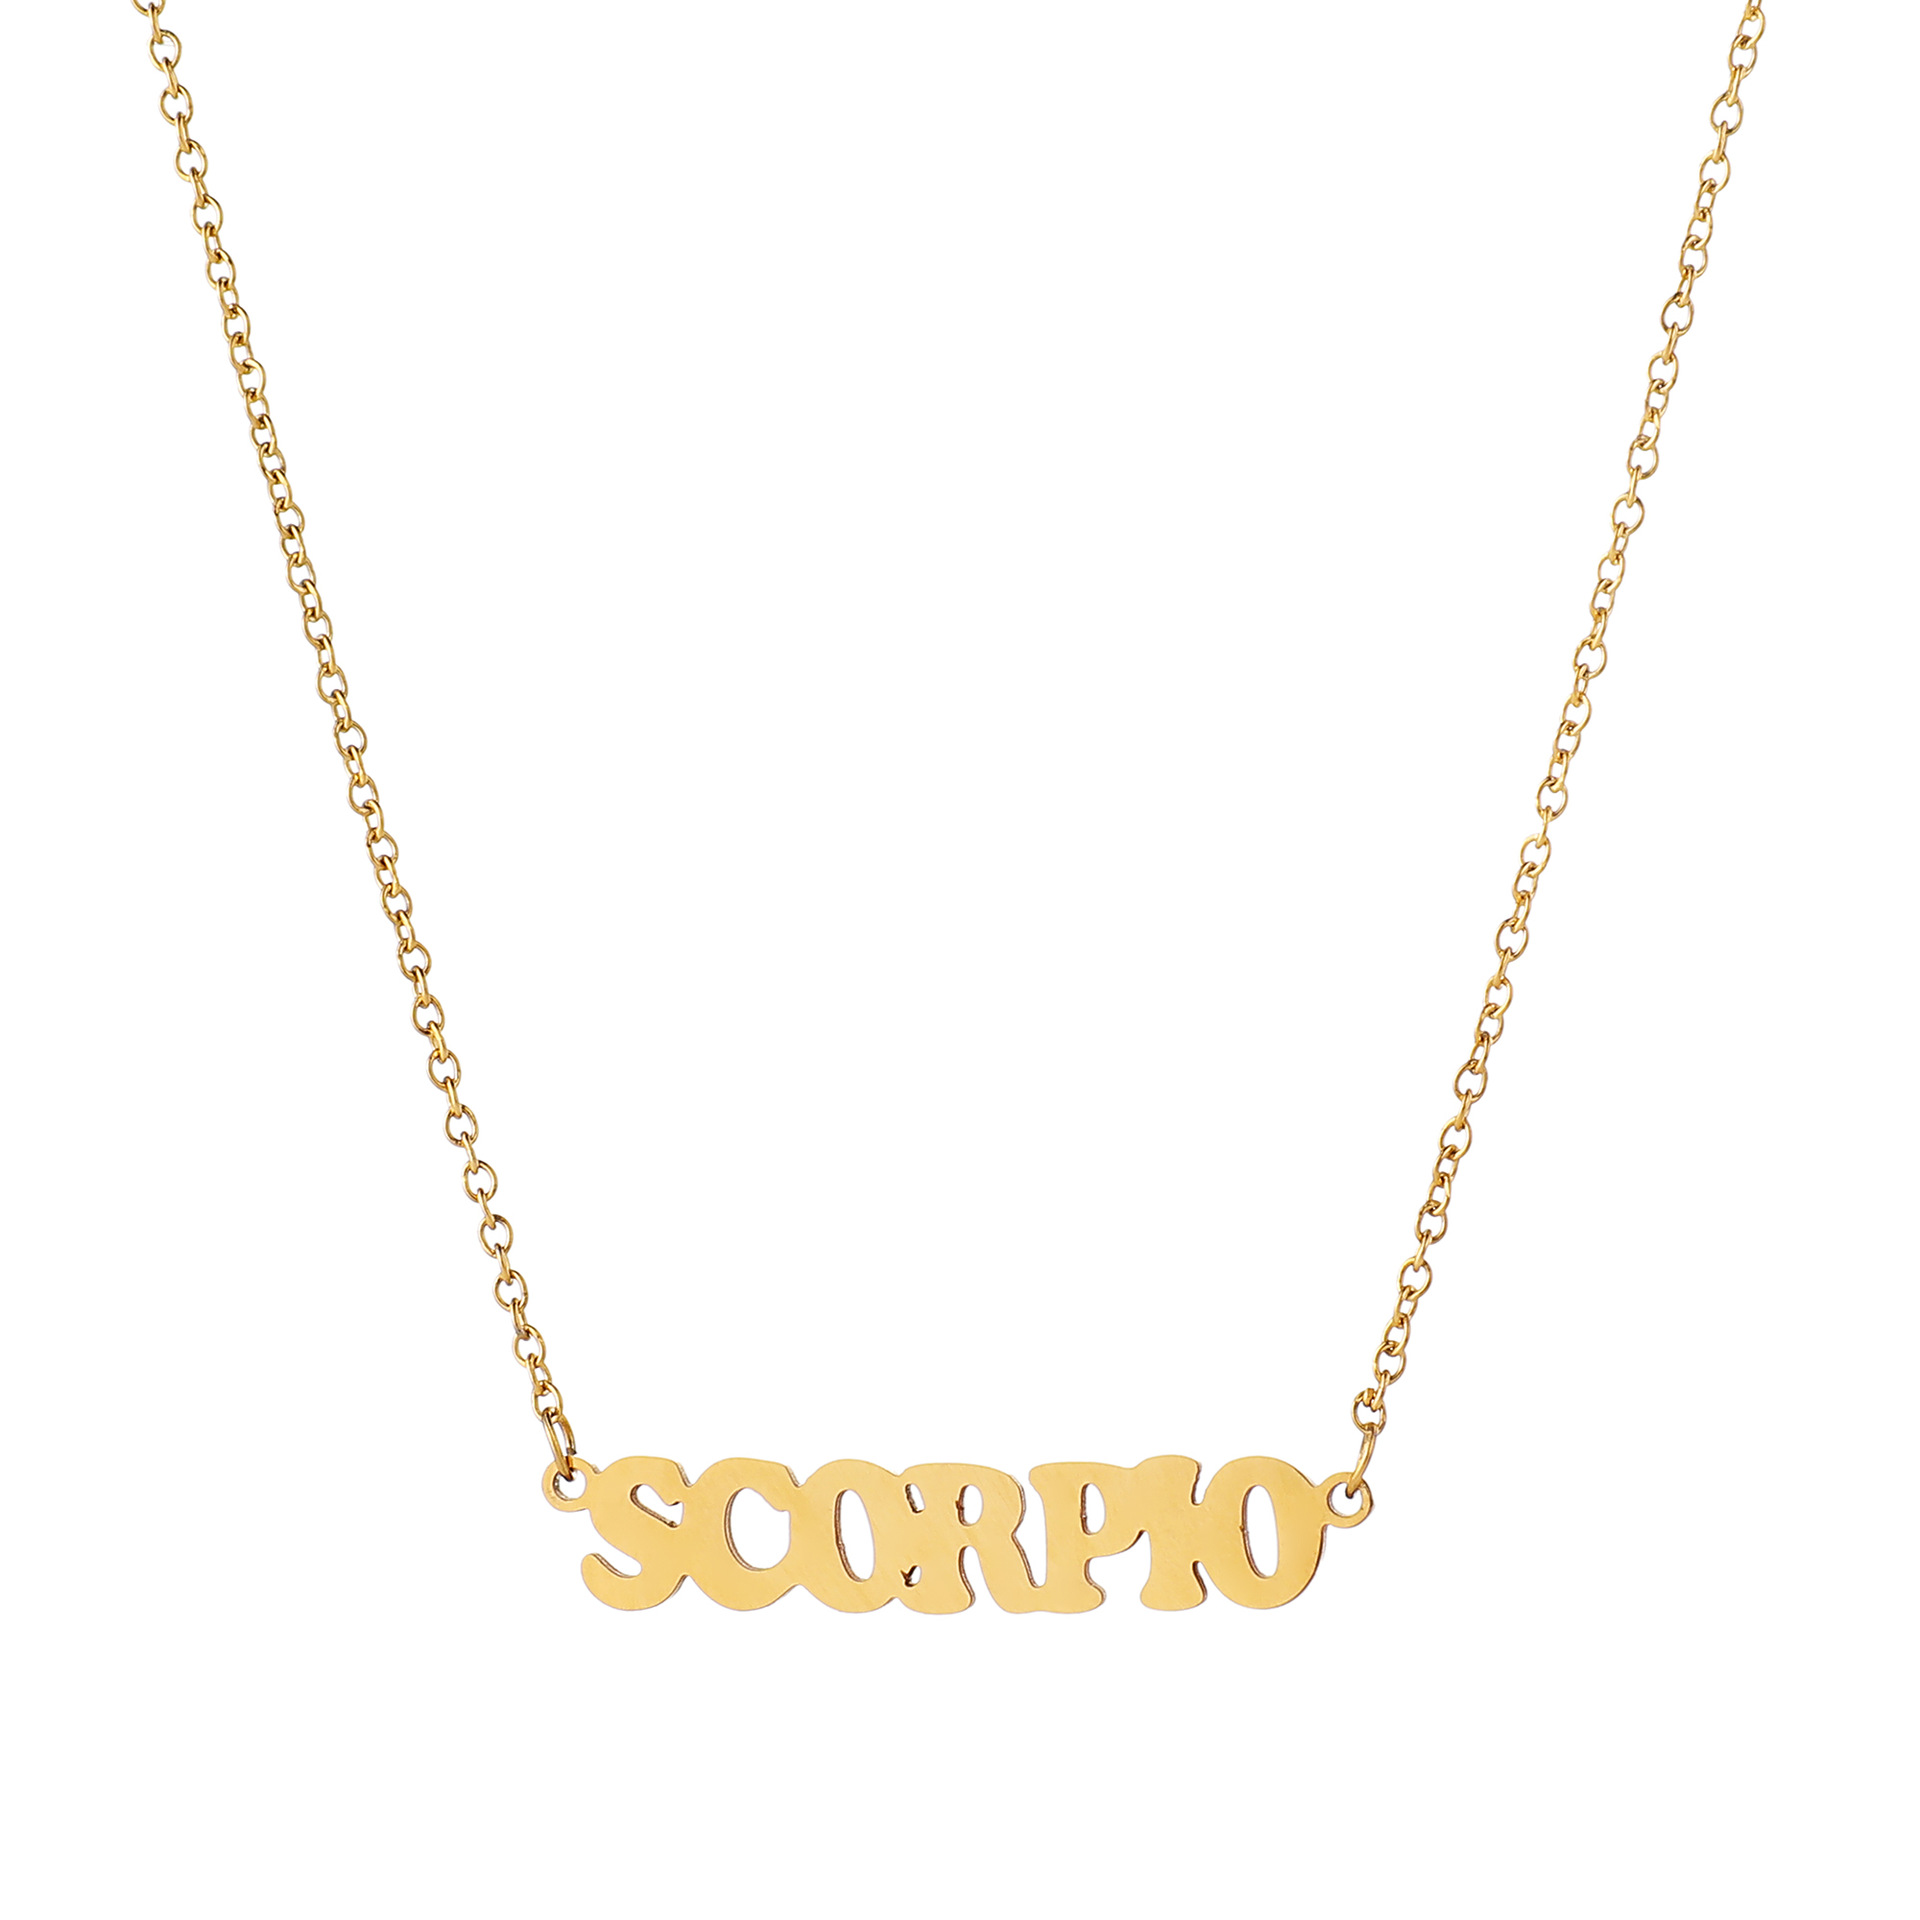 10:Scorpione